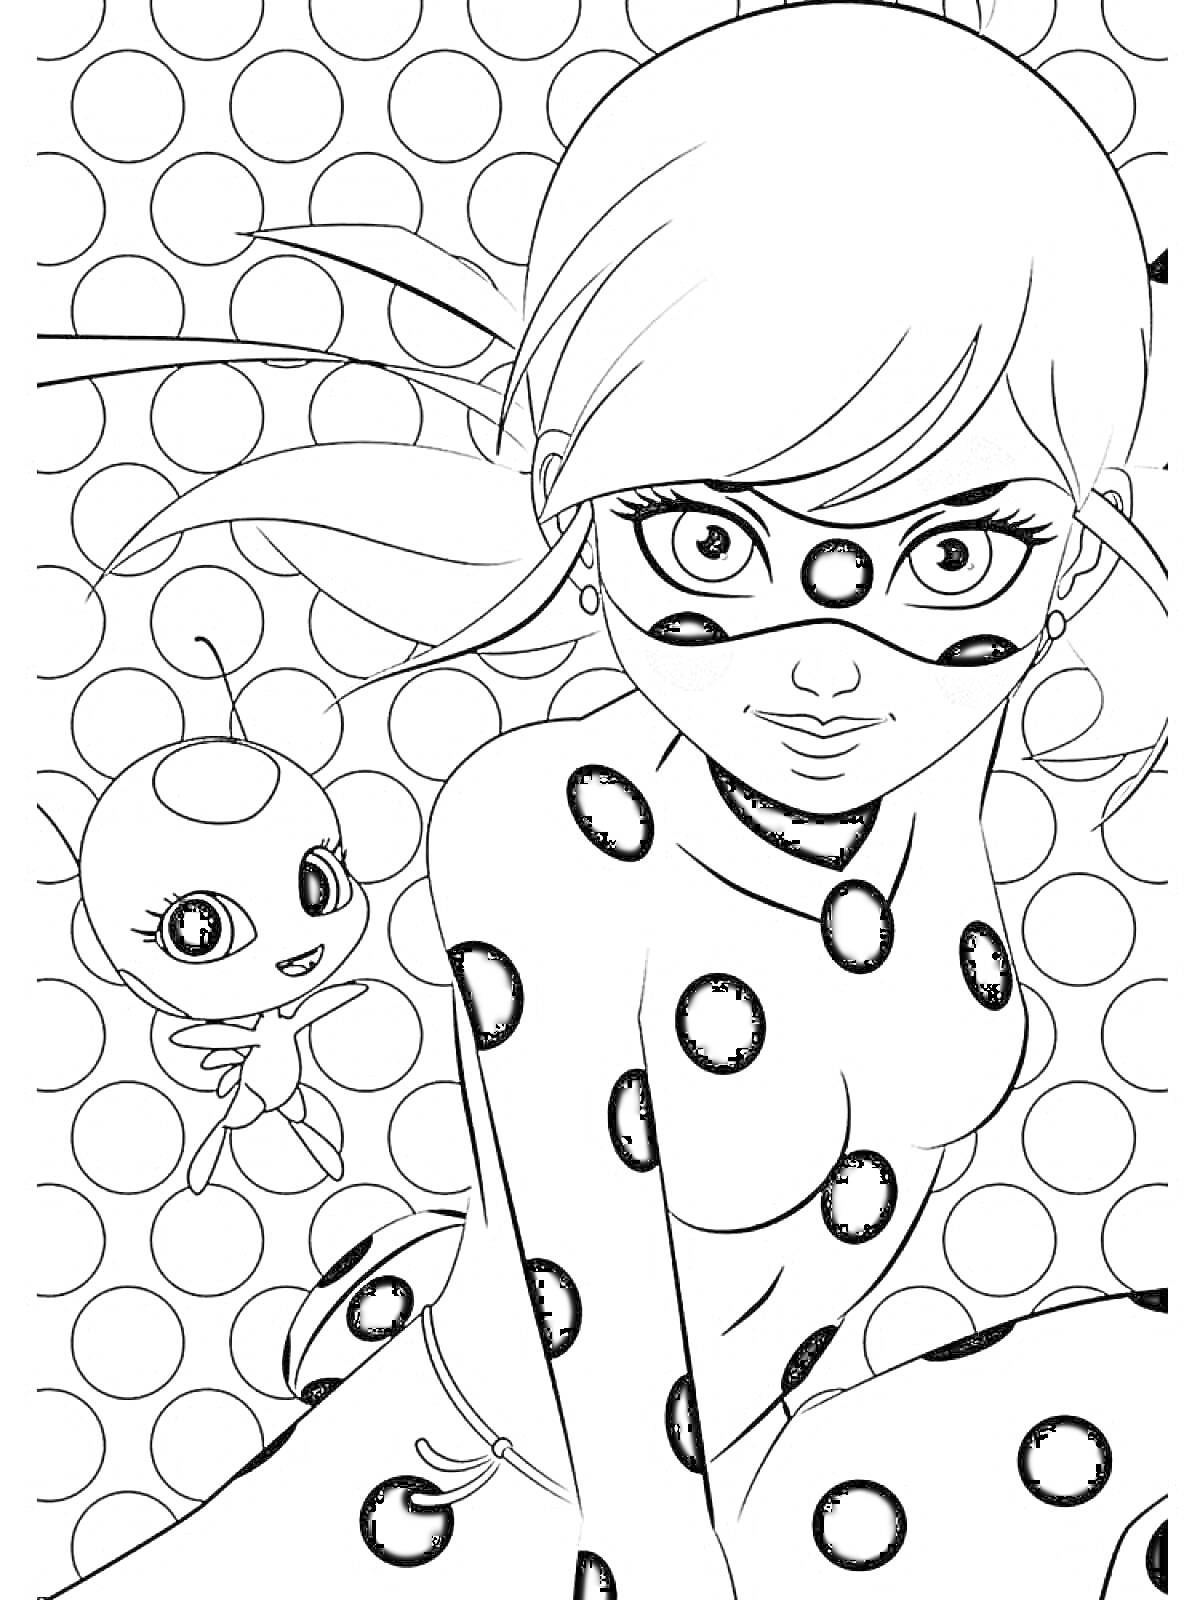 РаскраскаЛеди Баг с маской и точками на костюме на фоне горошков, рядом с ней маленький персонаж с антеннами